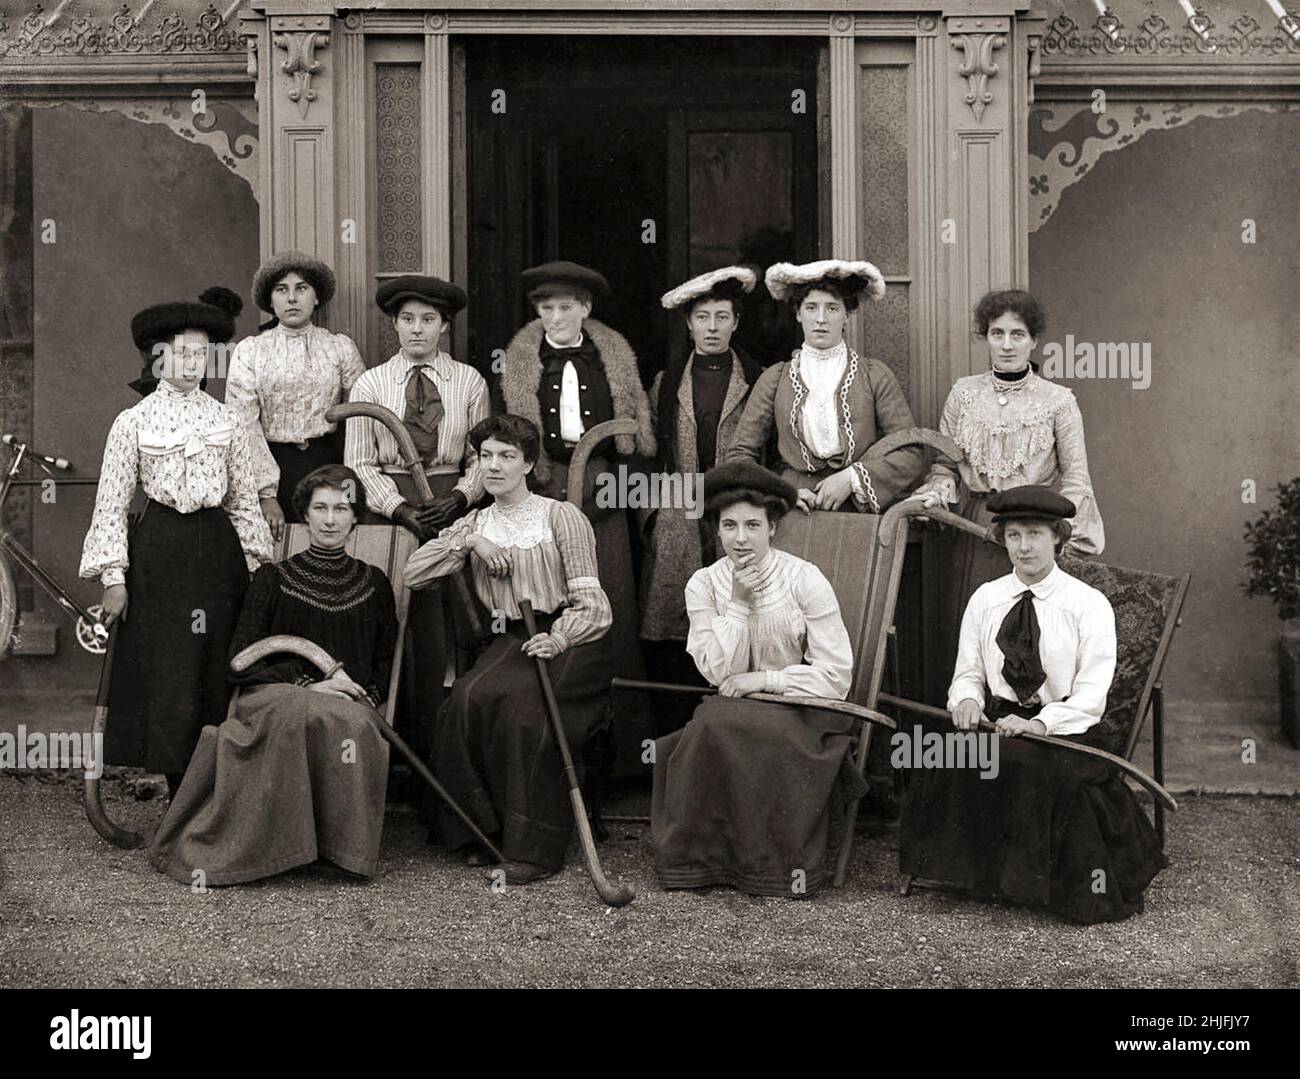 Une photographie de groupe vintage de dames dans une équipe irlandaise inconnue de joueurs de hockey sur gazon.Tourné en 1904. Banque D'Images